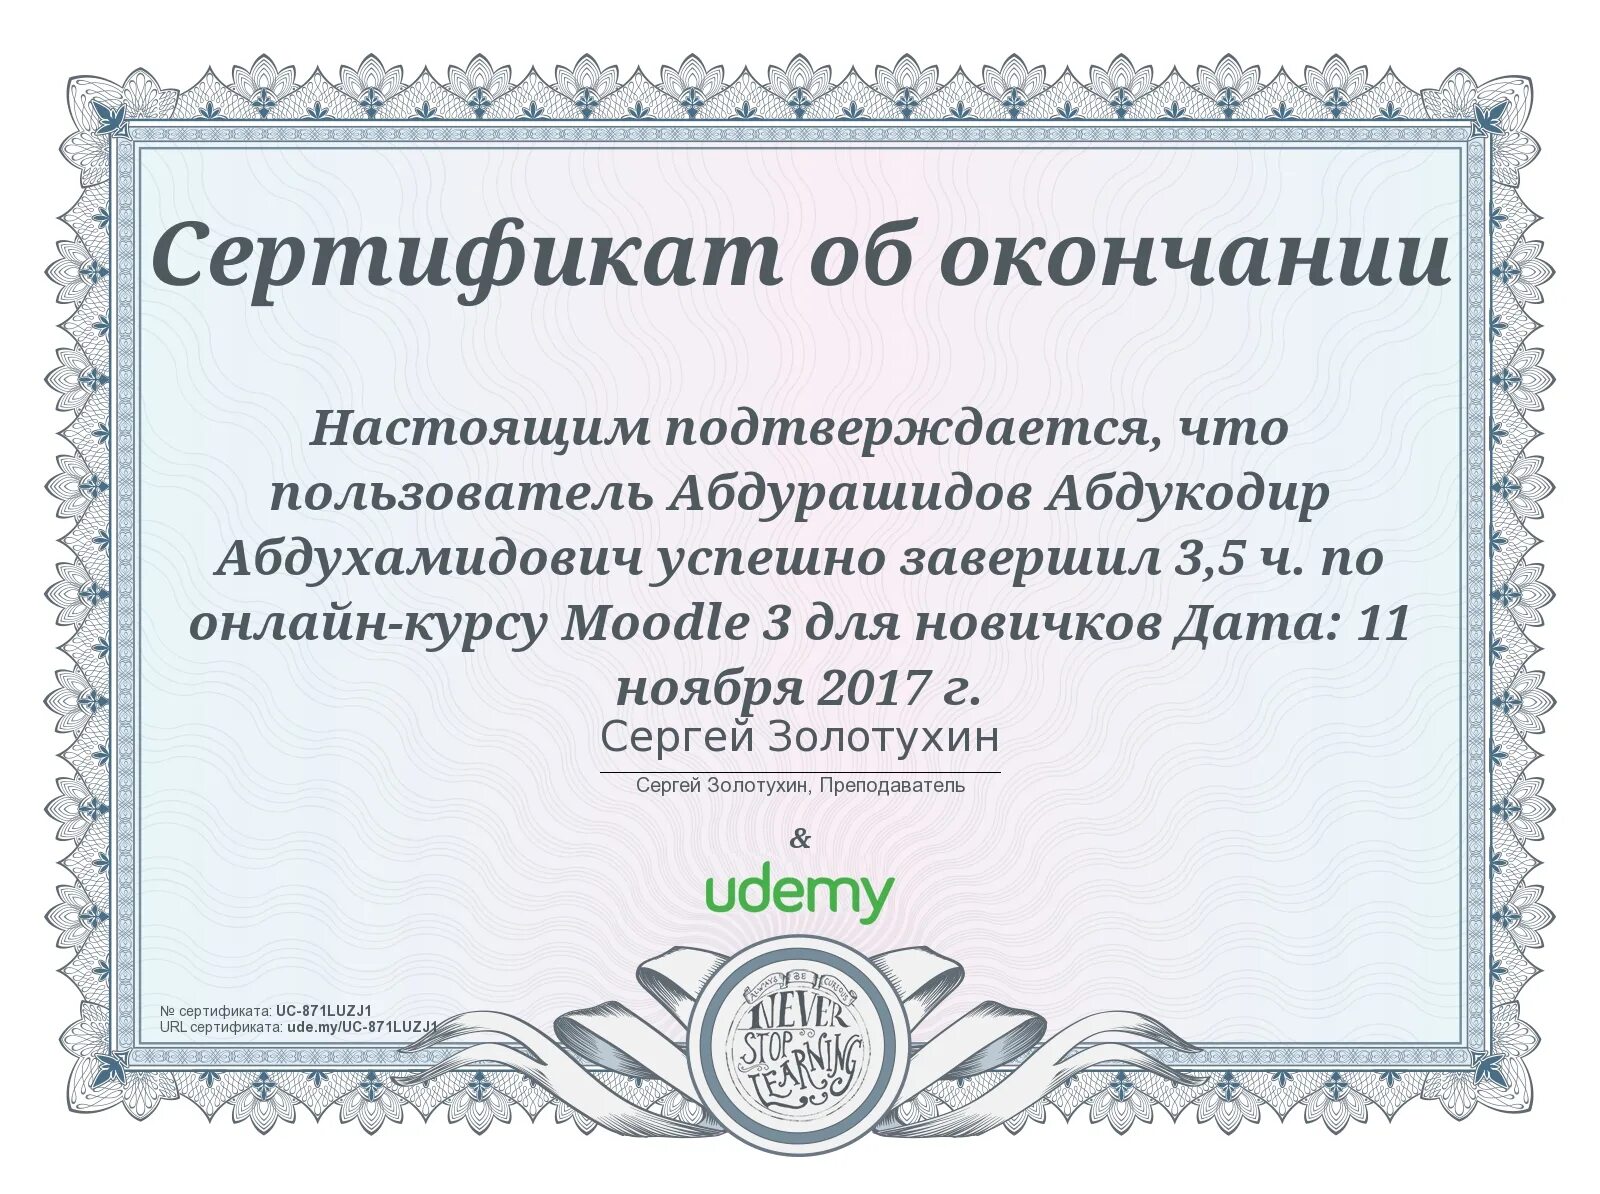 Сертификат Udemy. Сертификат юдеми. Udemy сертификат об окончании. Критическое мышление сертификат об окончании курса. Url certificate